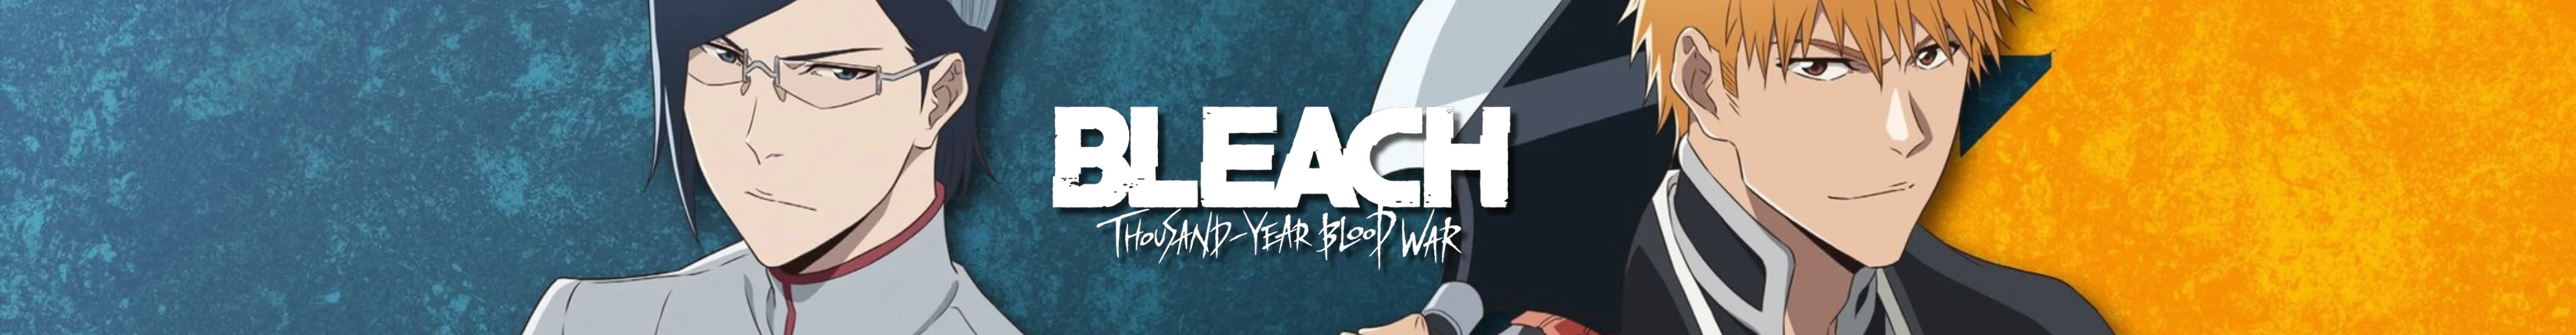 Bleach caps banner